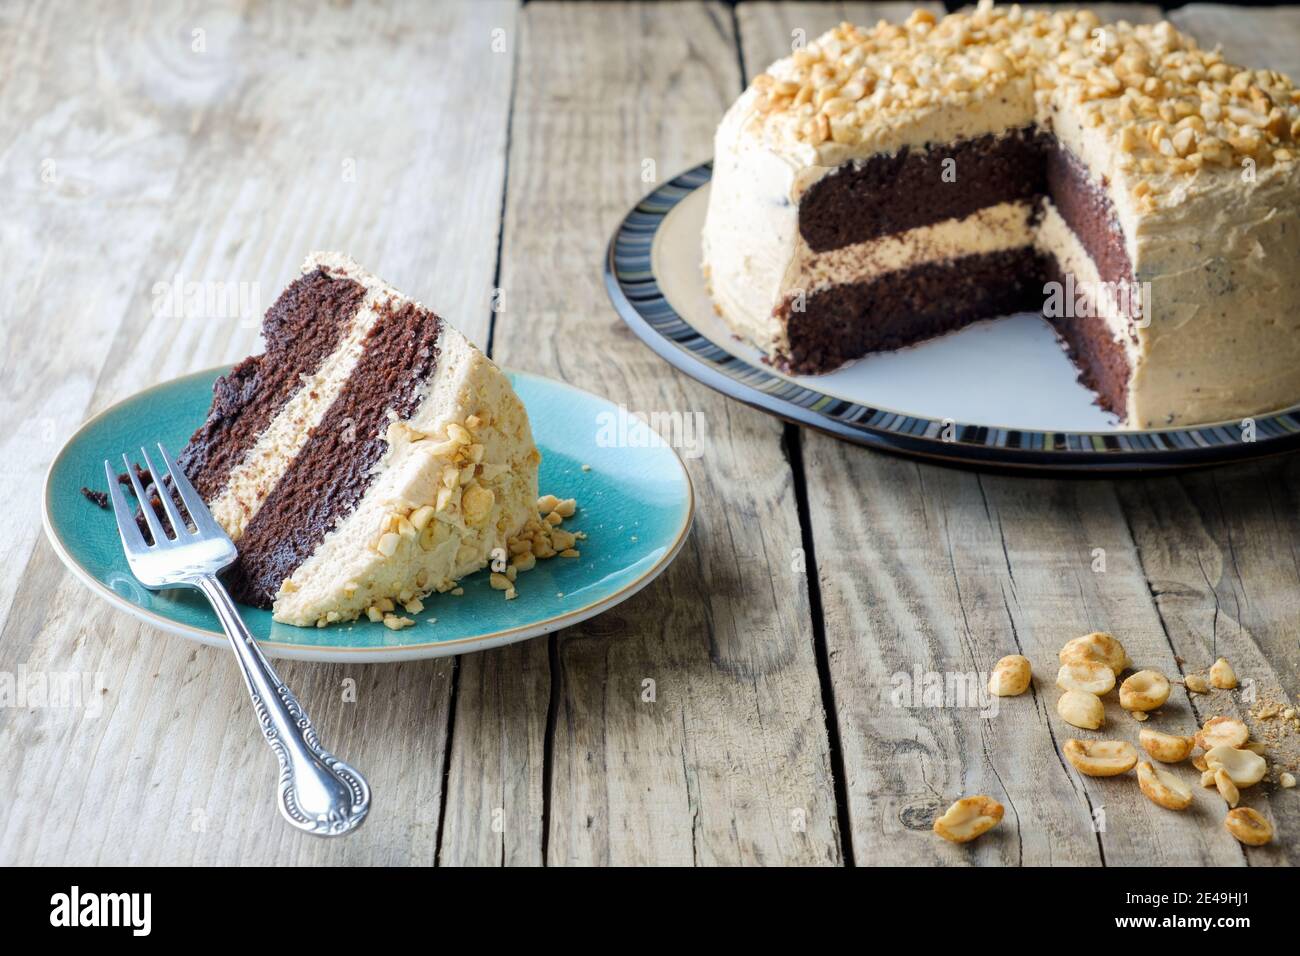 Ein frisch gebackener Erdnussbutter und Schokoladenkuchen. Die Torte hat eine dicke Buttercreme Füllung und Top und eine Scheibe wird auf einer Beilagenteller serviert Stockfoto